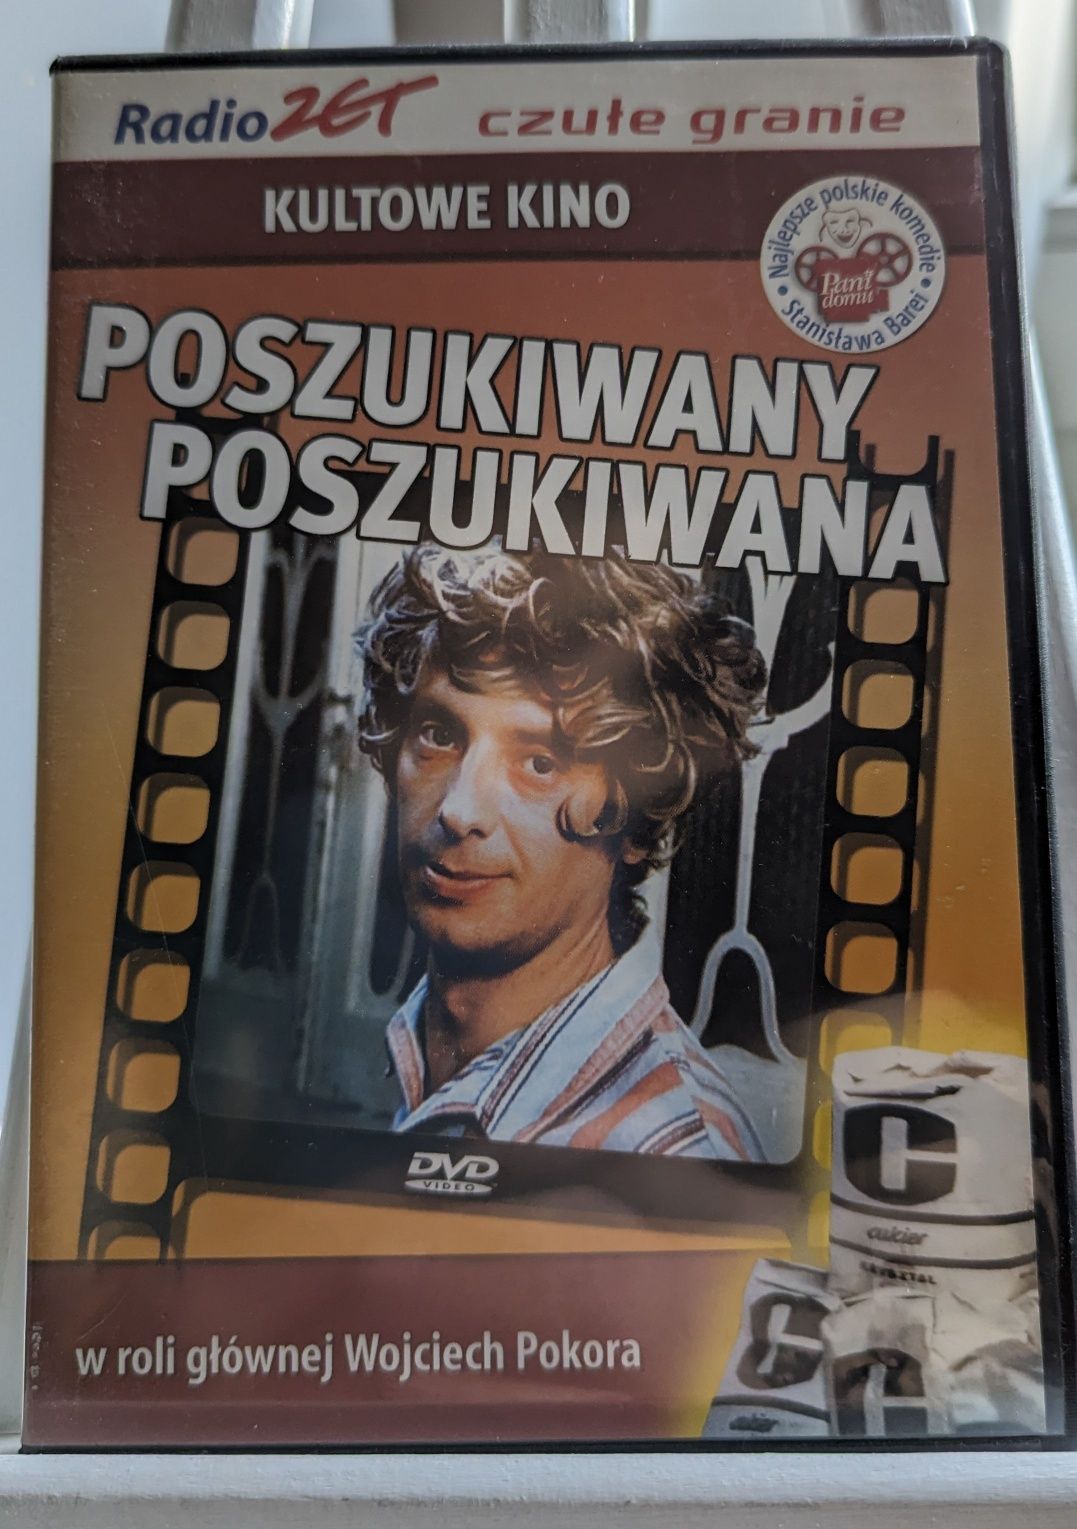 Poszukiwany, Poszukiwana (DVD)